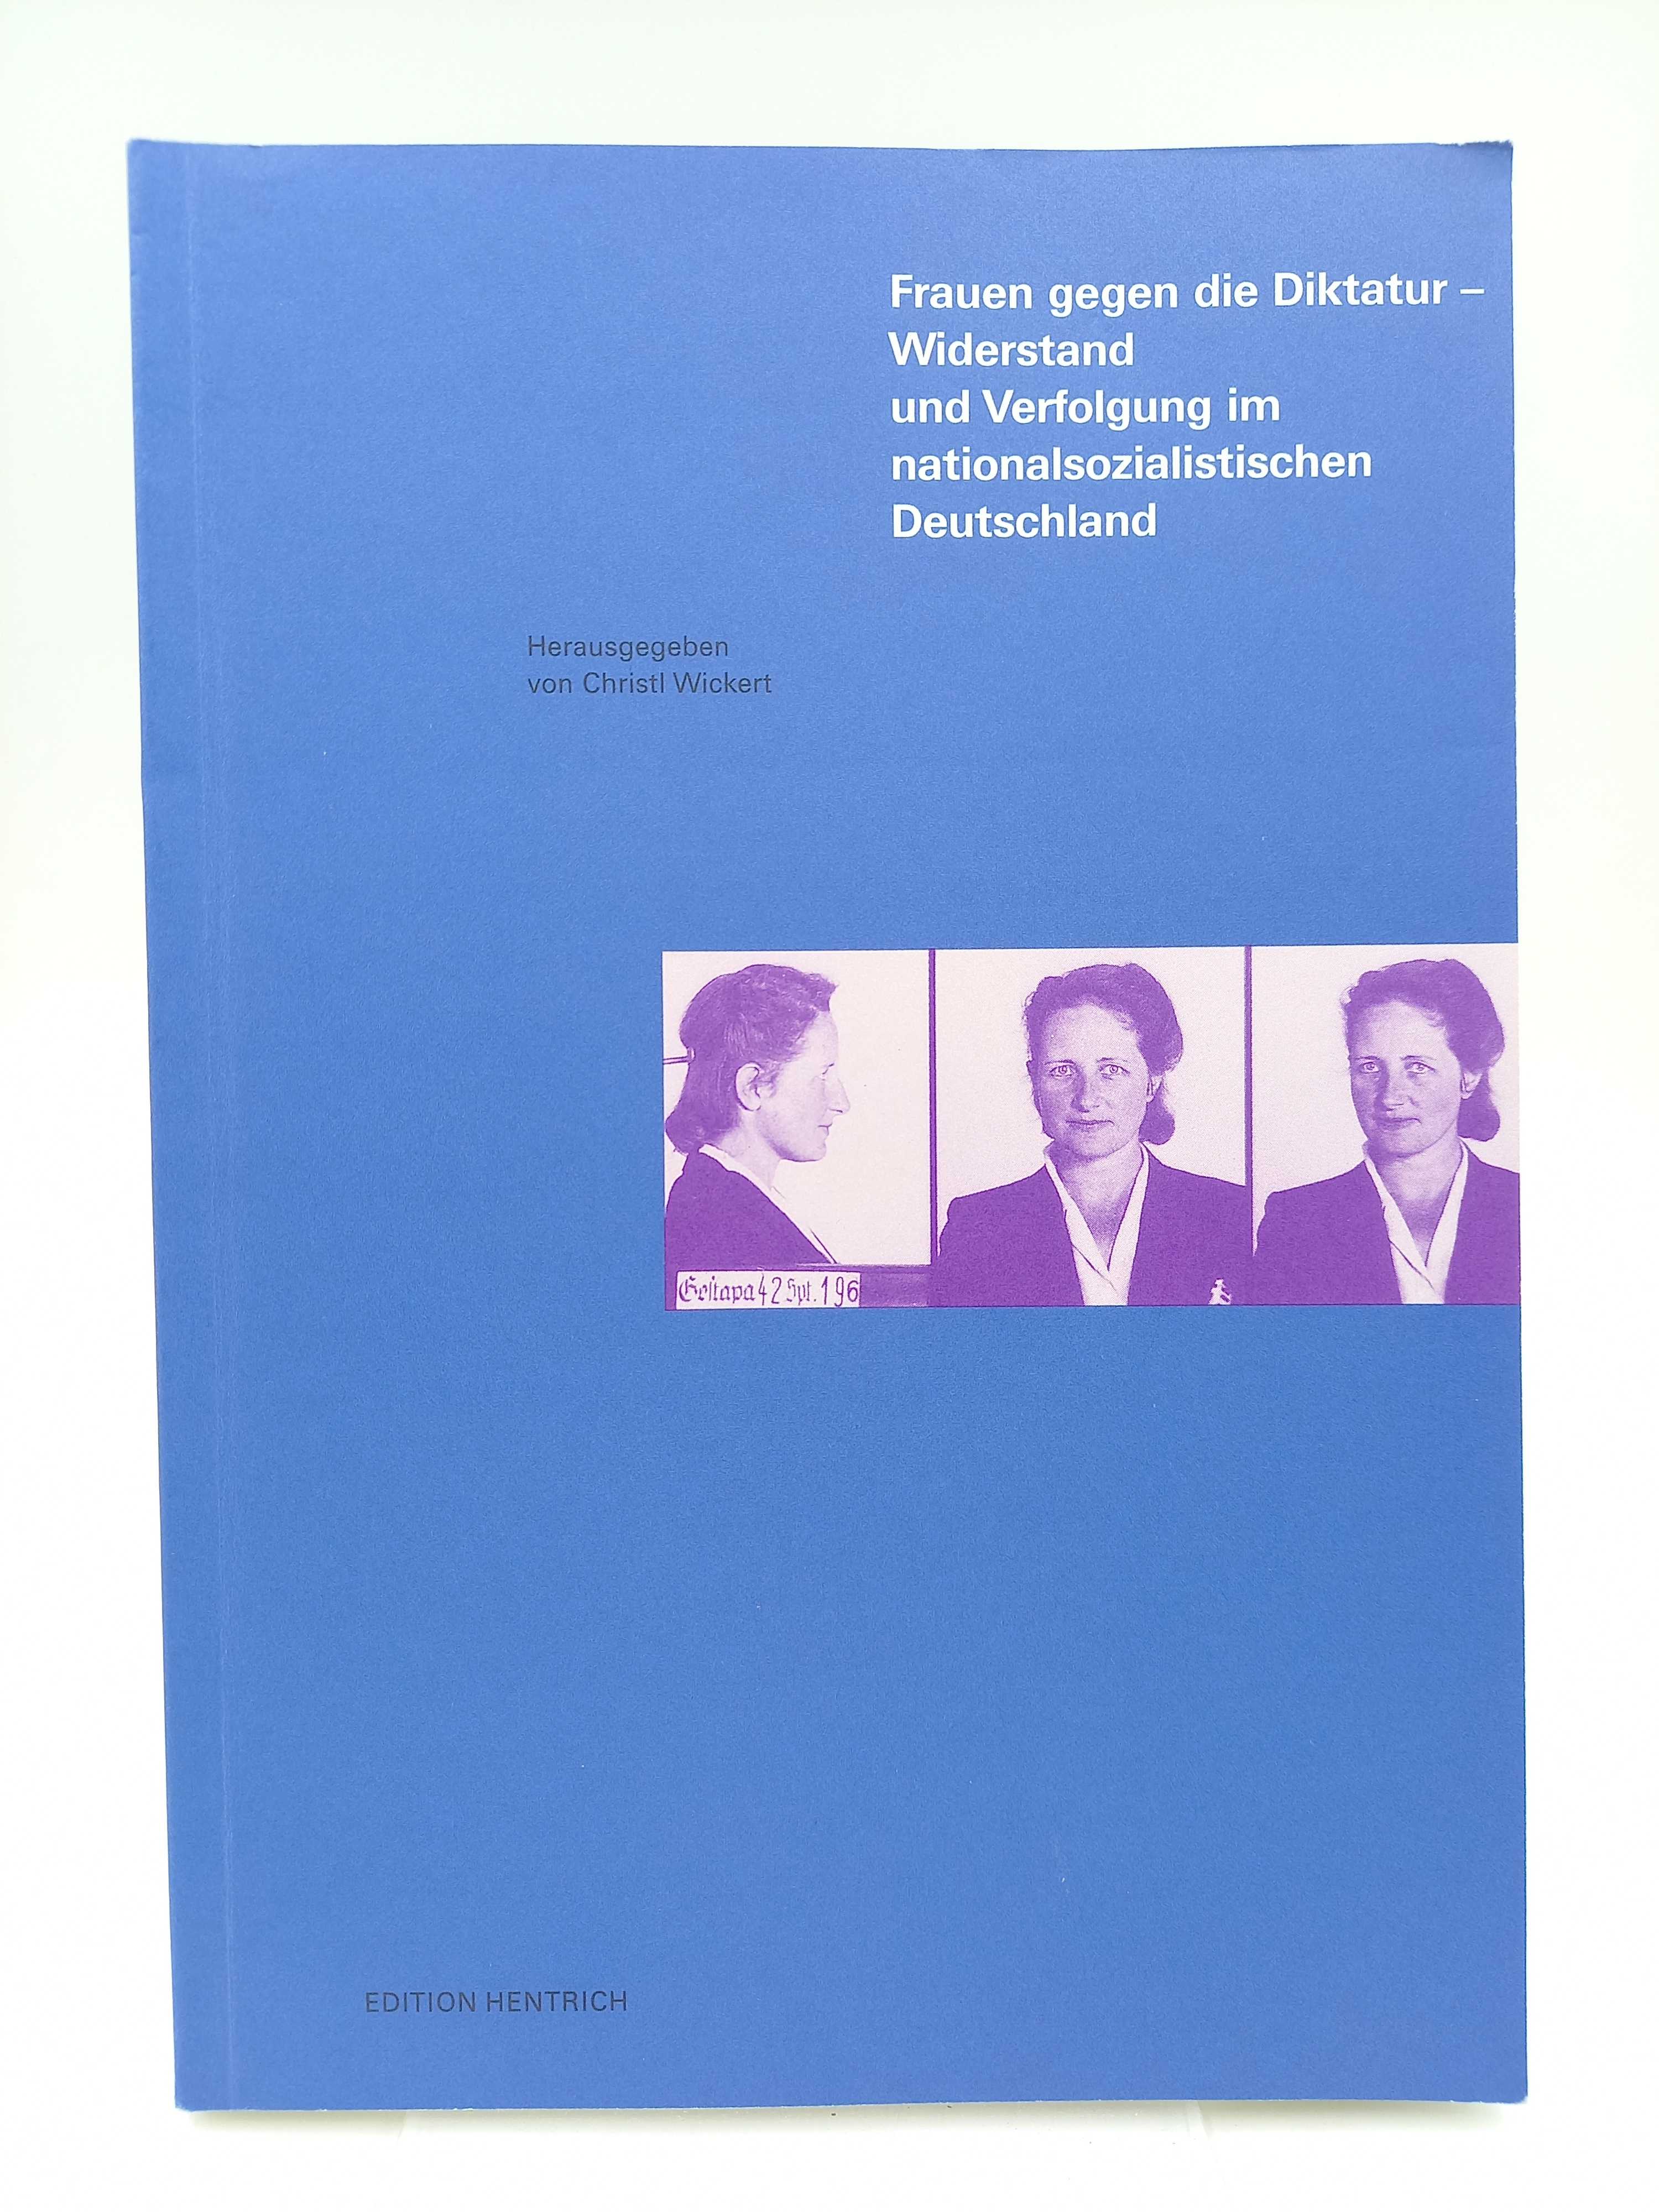 Frauen gegen die Diktatur. Widerstand und Verfolgung im nationalsozialistischen Deutschland - Wickert, Christl